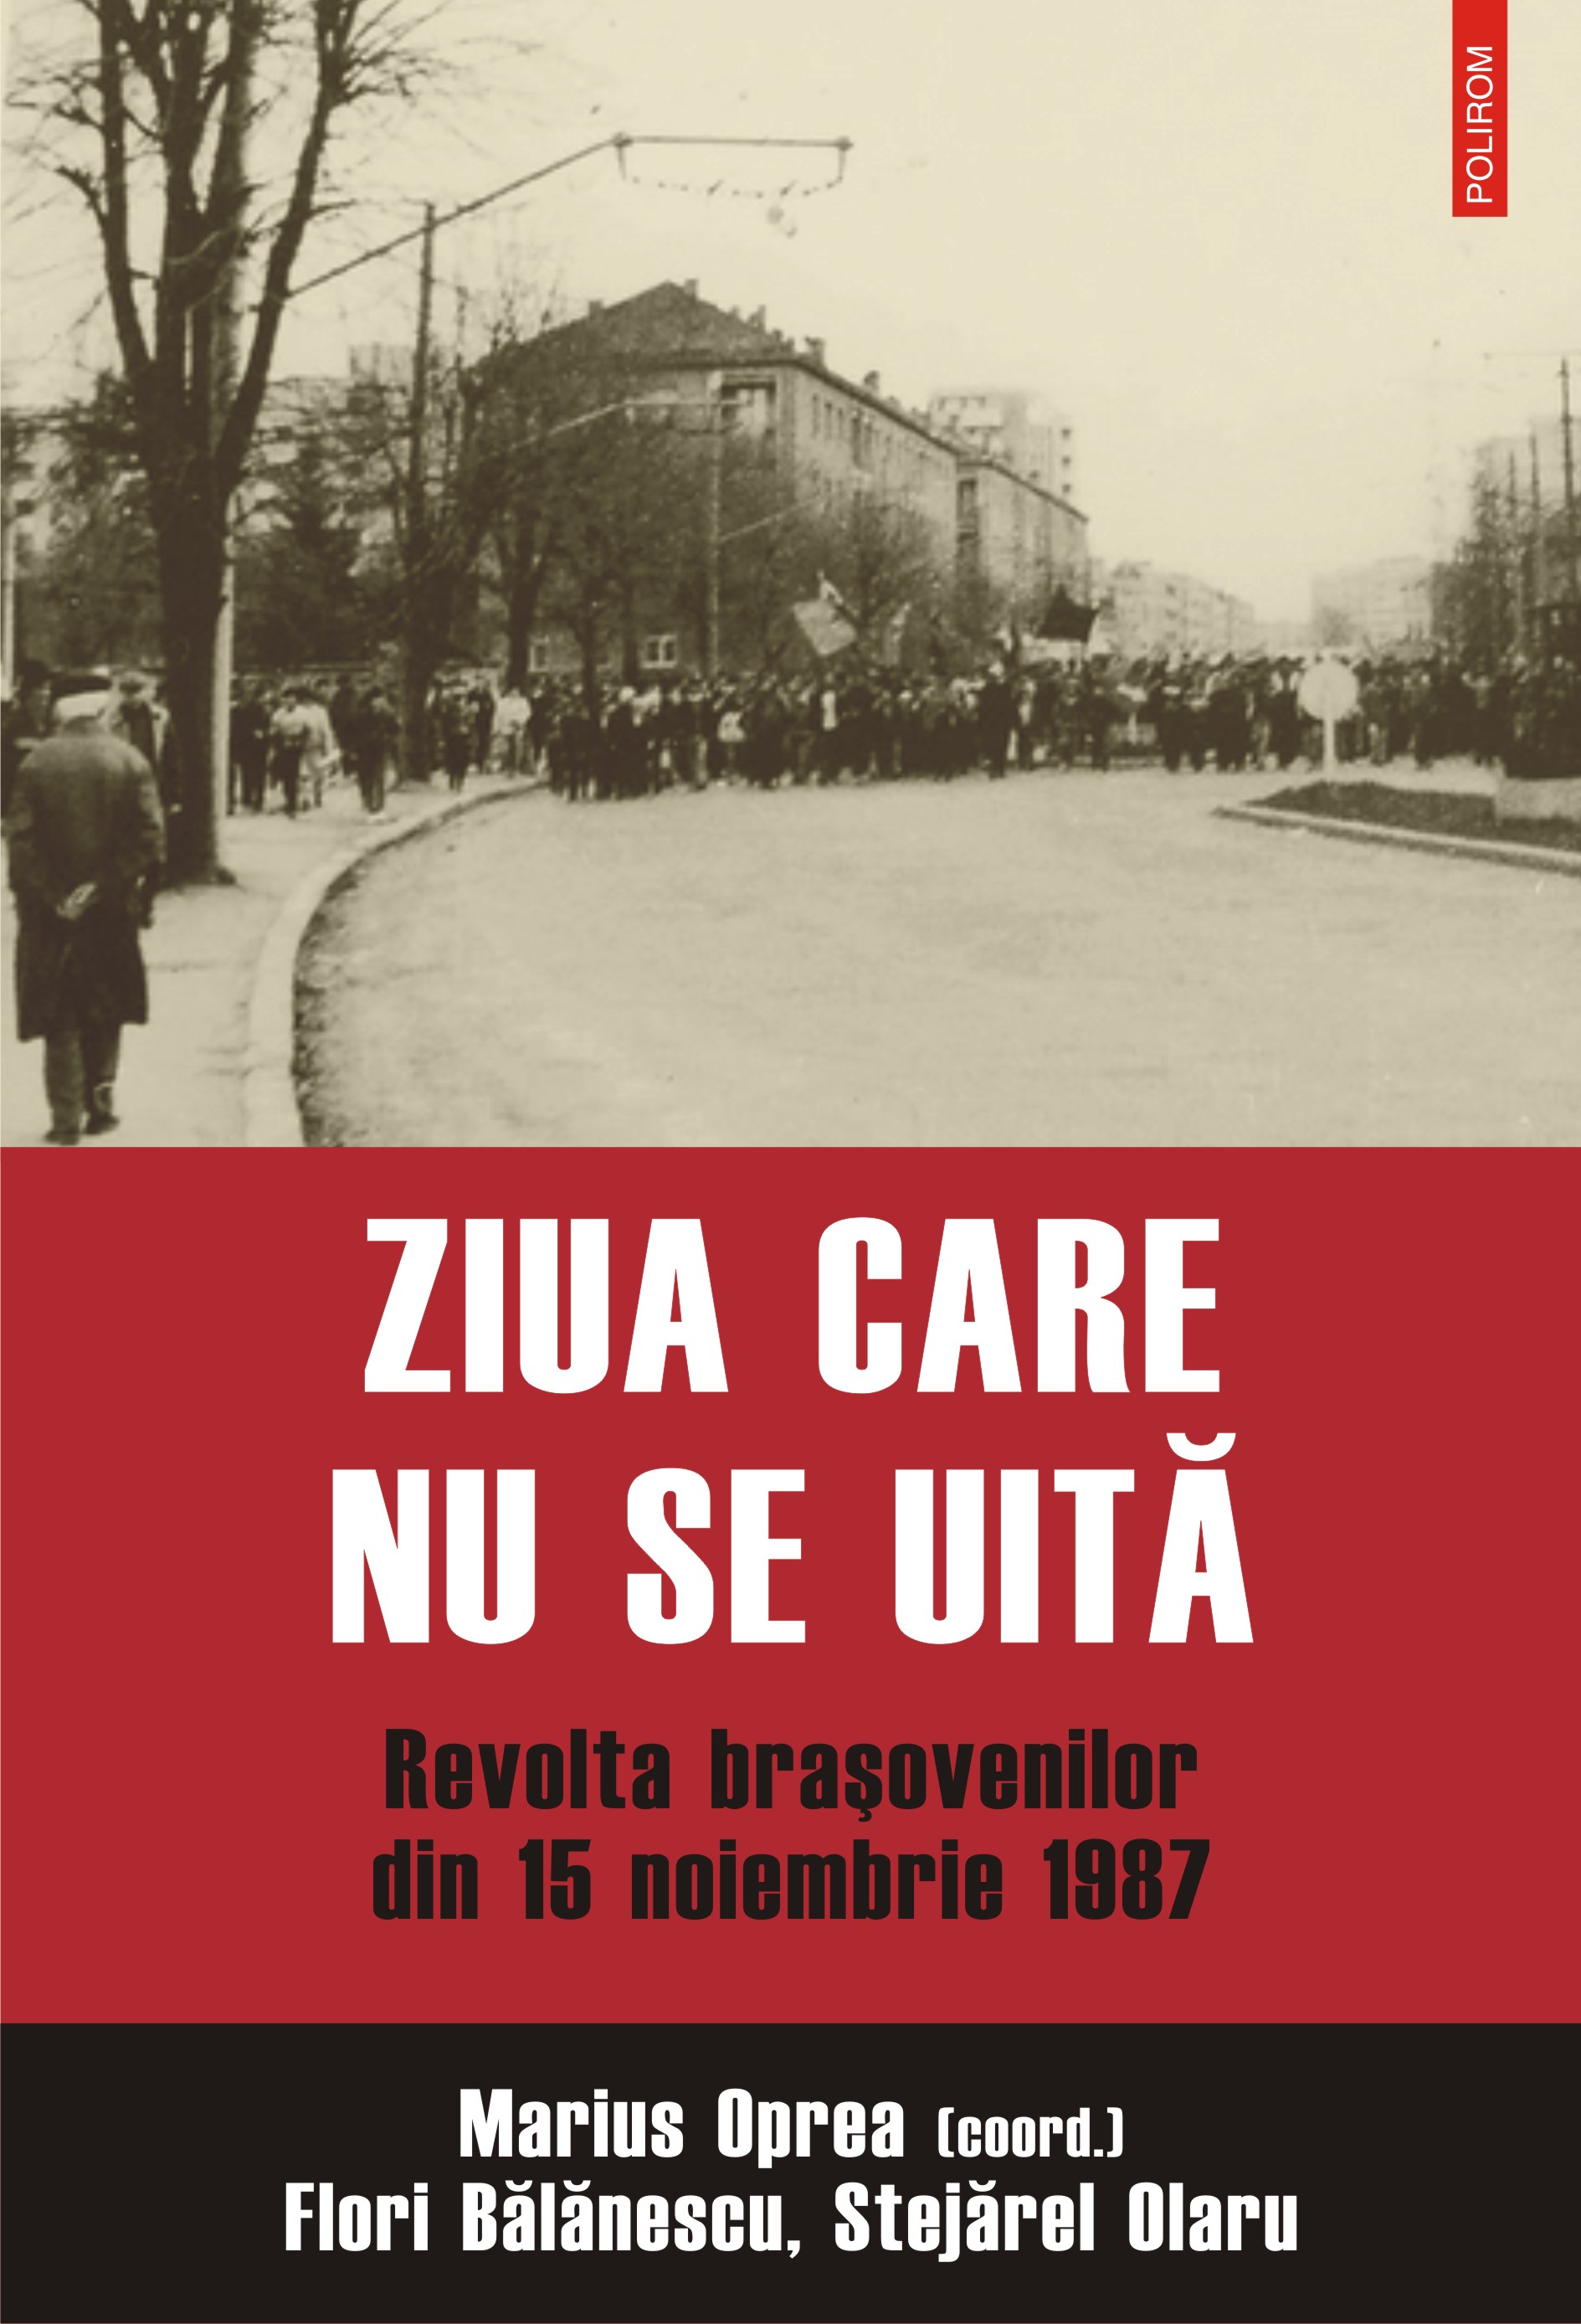 eBook Ziua care nu se uita. Revolta brasovenilor din 15 noiembrie 1987 - Marius (coord.) Oprea